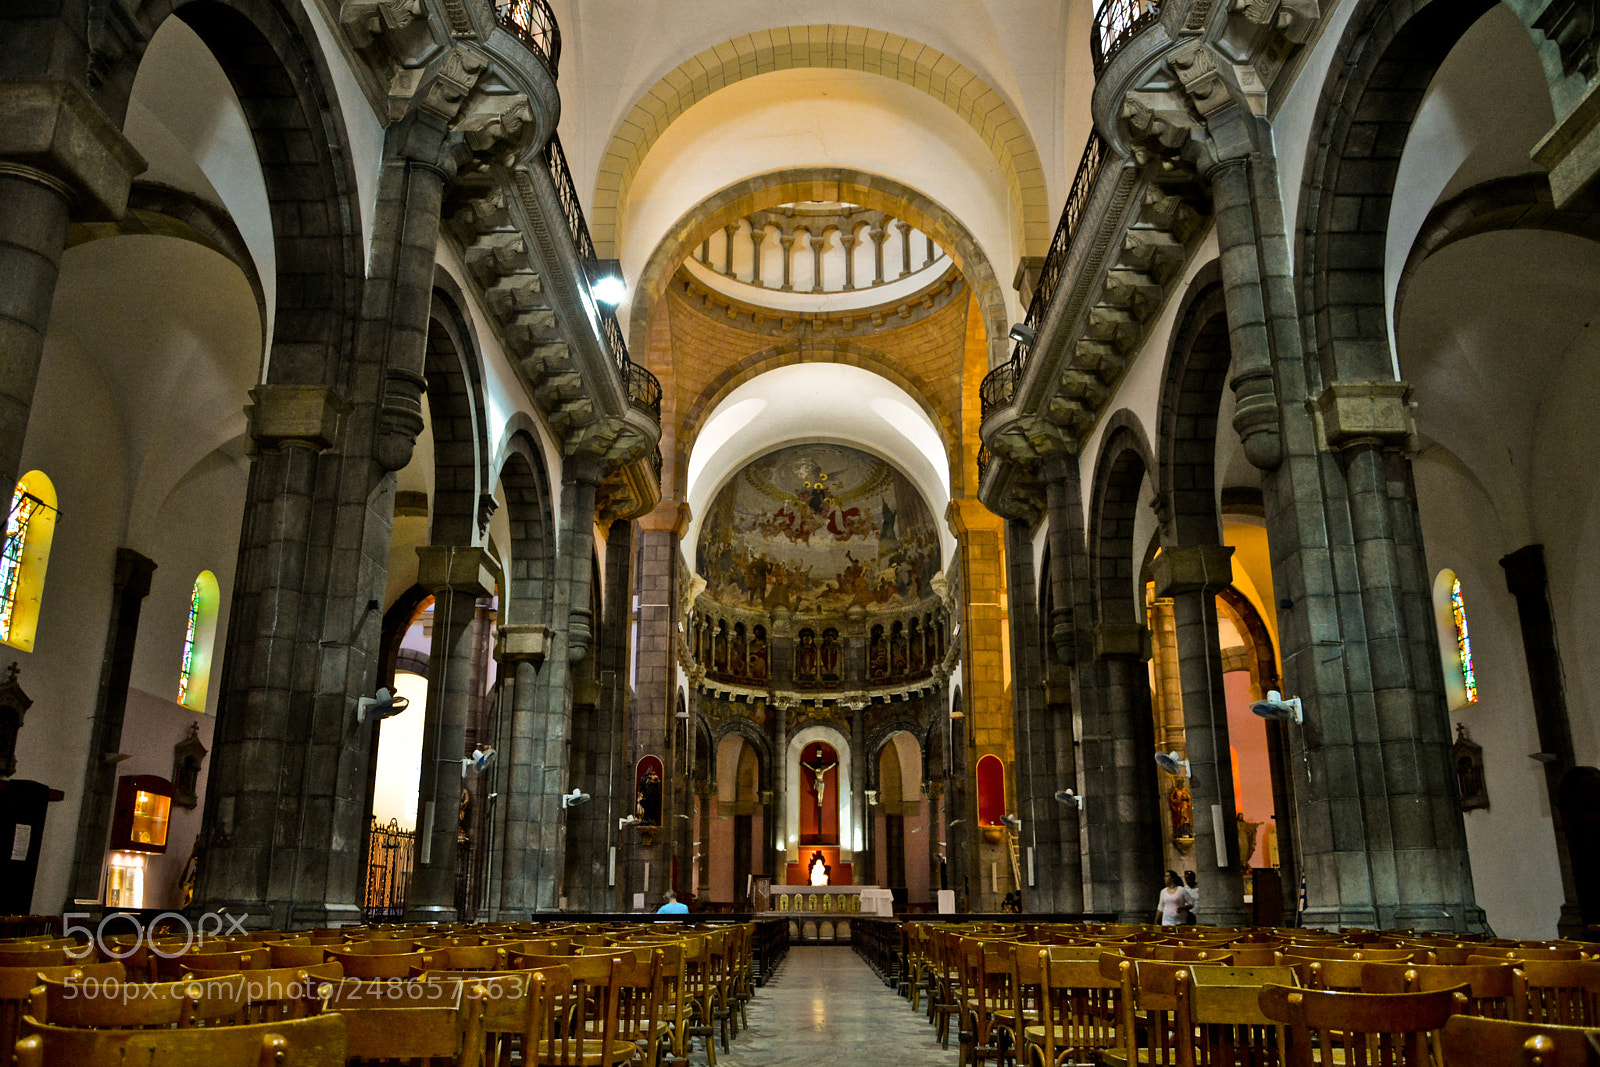 Nikon D5200 sample photo. Cathedrale saint-vincent de paul photography